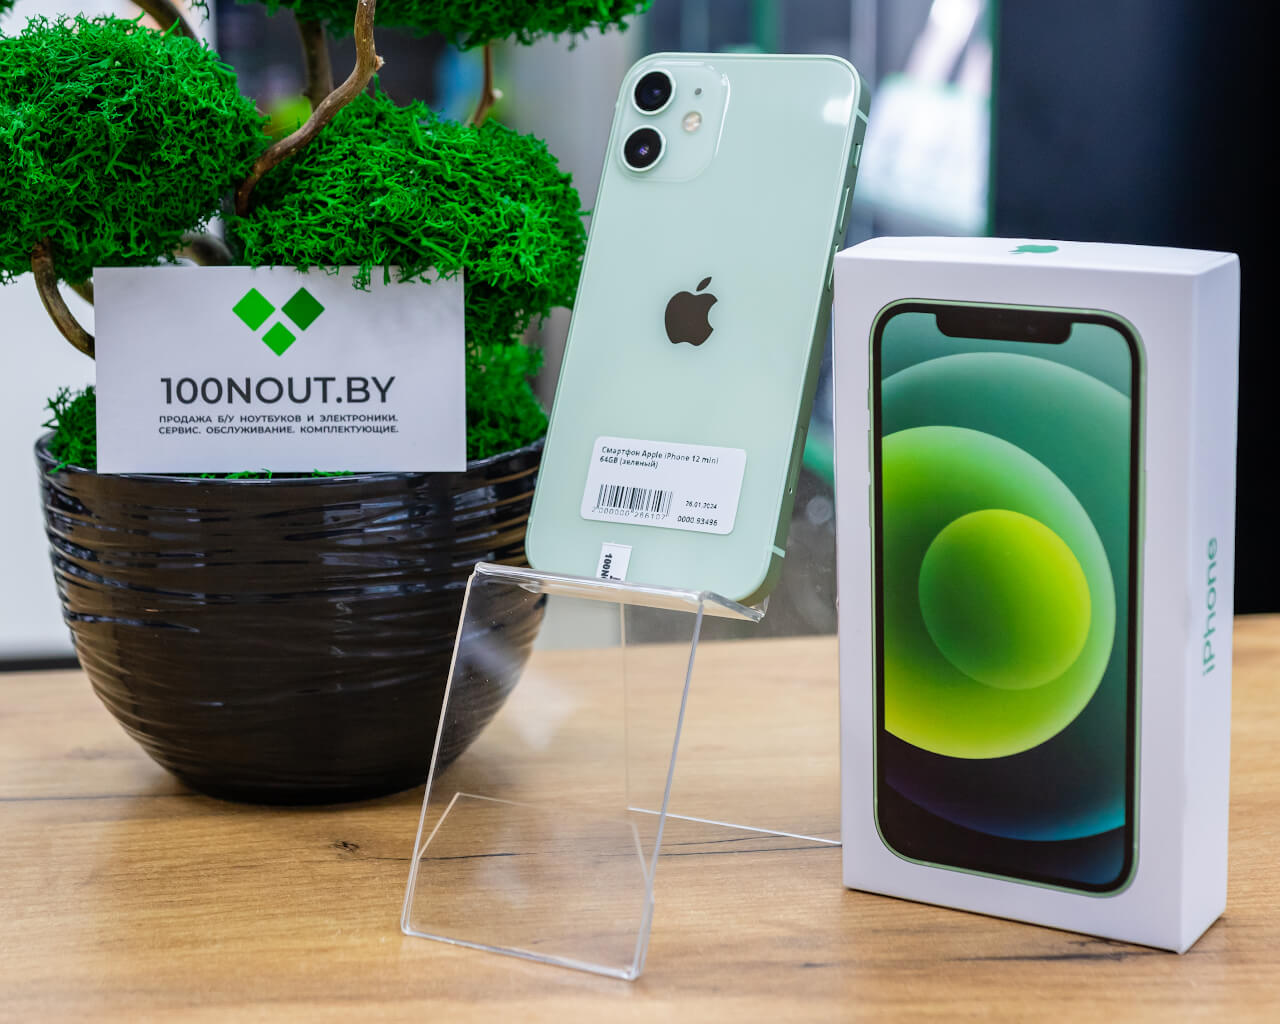 Смартфон Apple iPhone 12 mini 64GB (зеленый) б/у купить недорого в Минске -  100NOUT